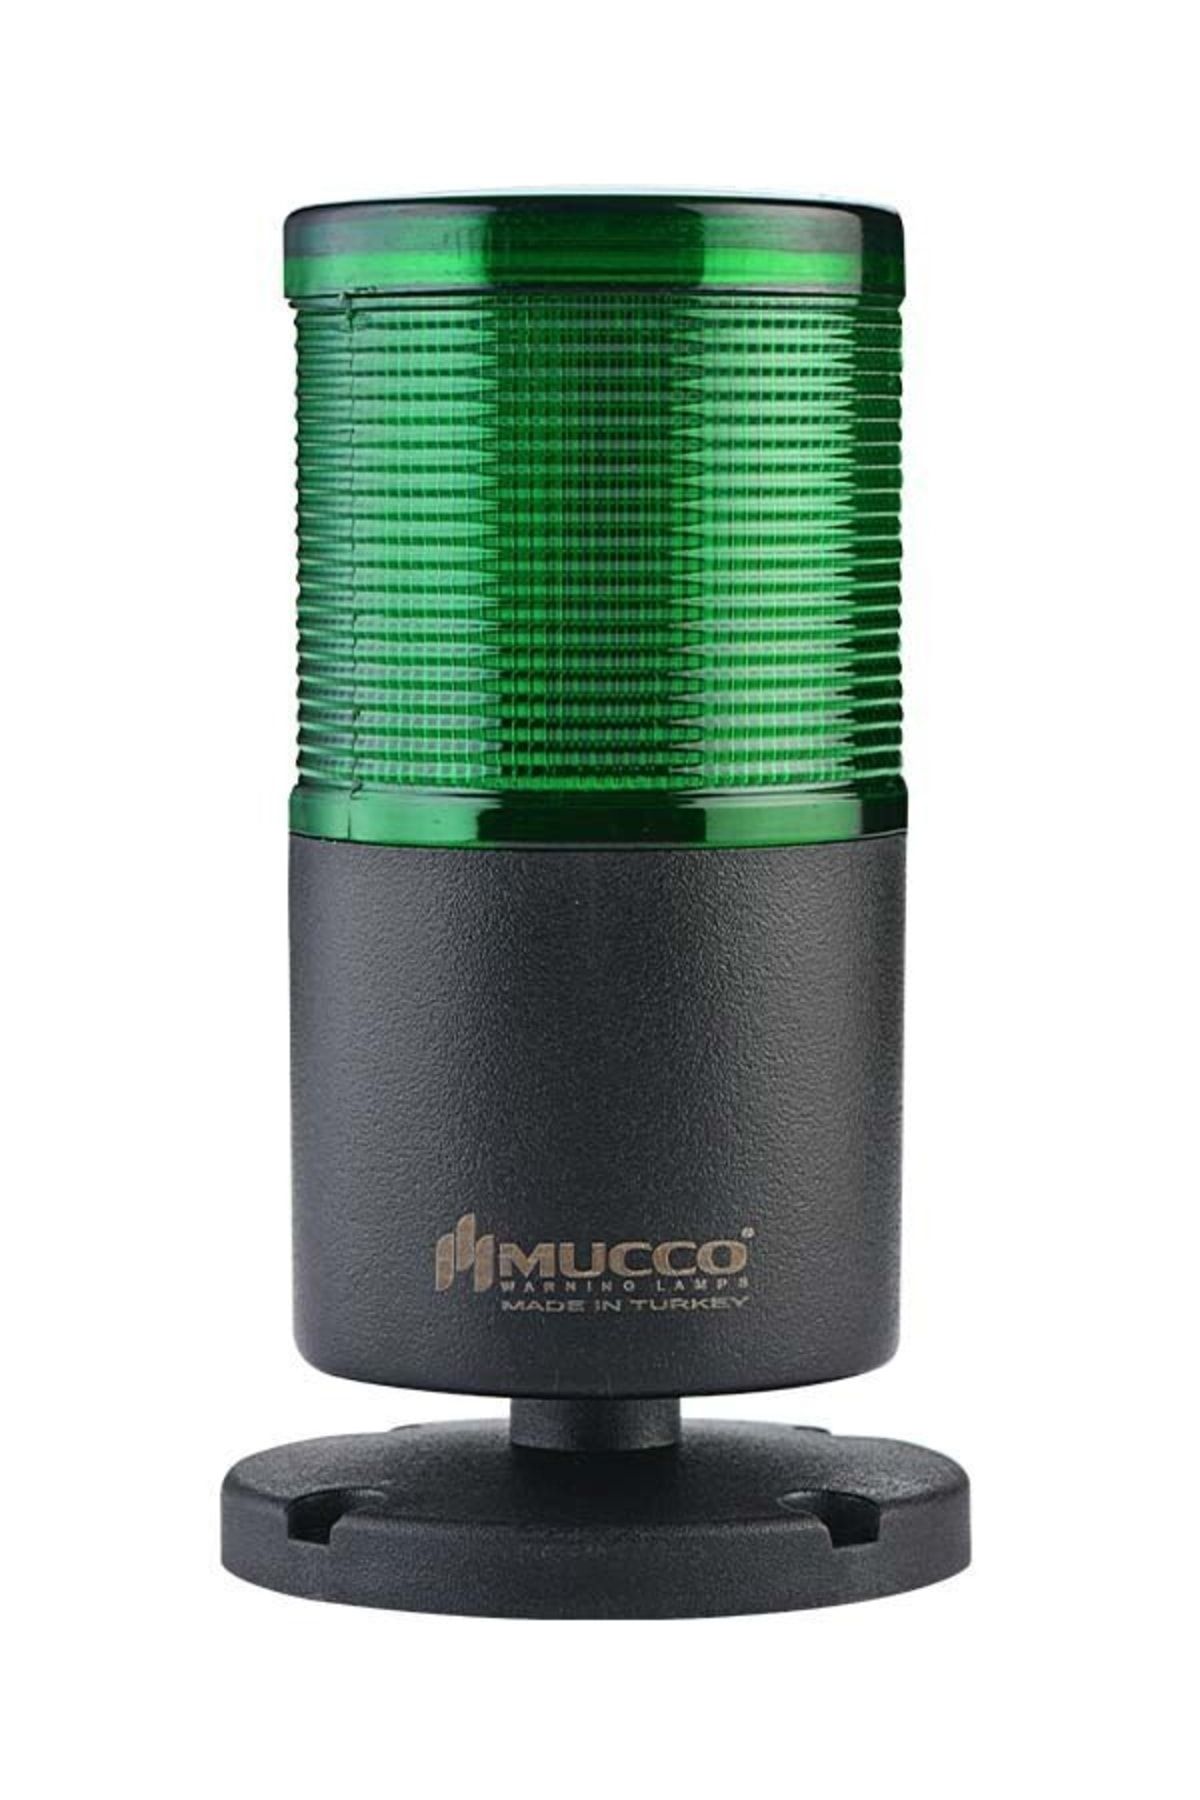 MUCCO 1 Katlı Flaşör Işıklı Kolon 220v Ac Snt-7012-f1-yeşil